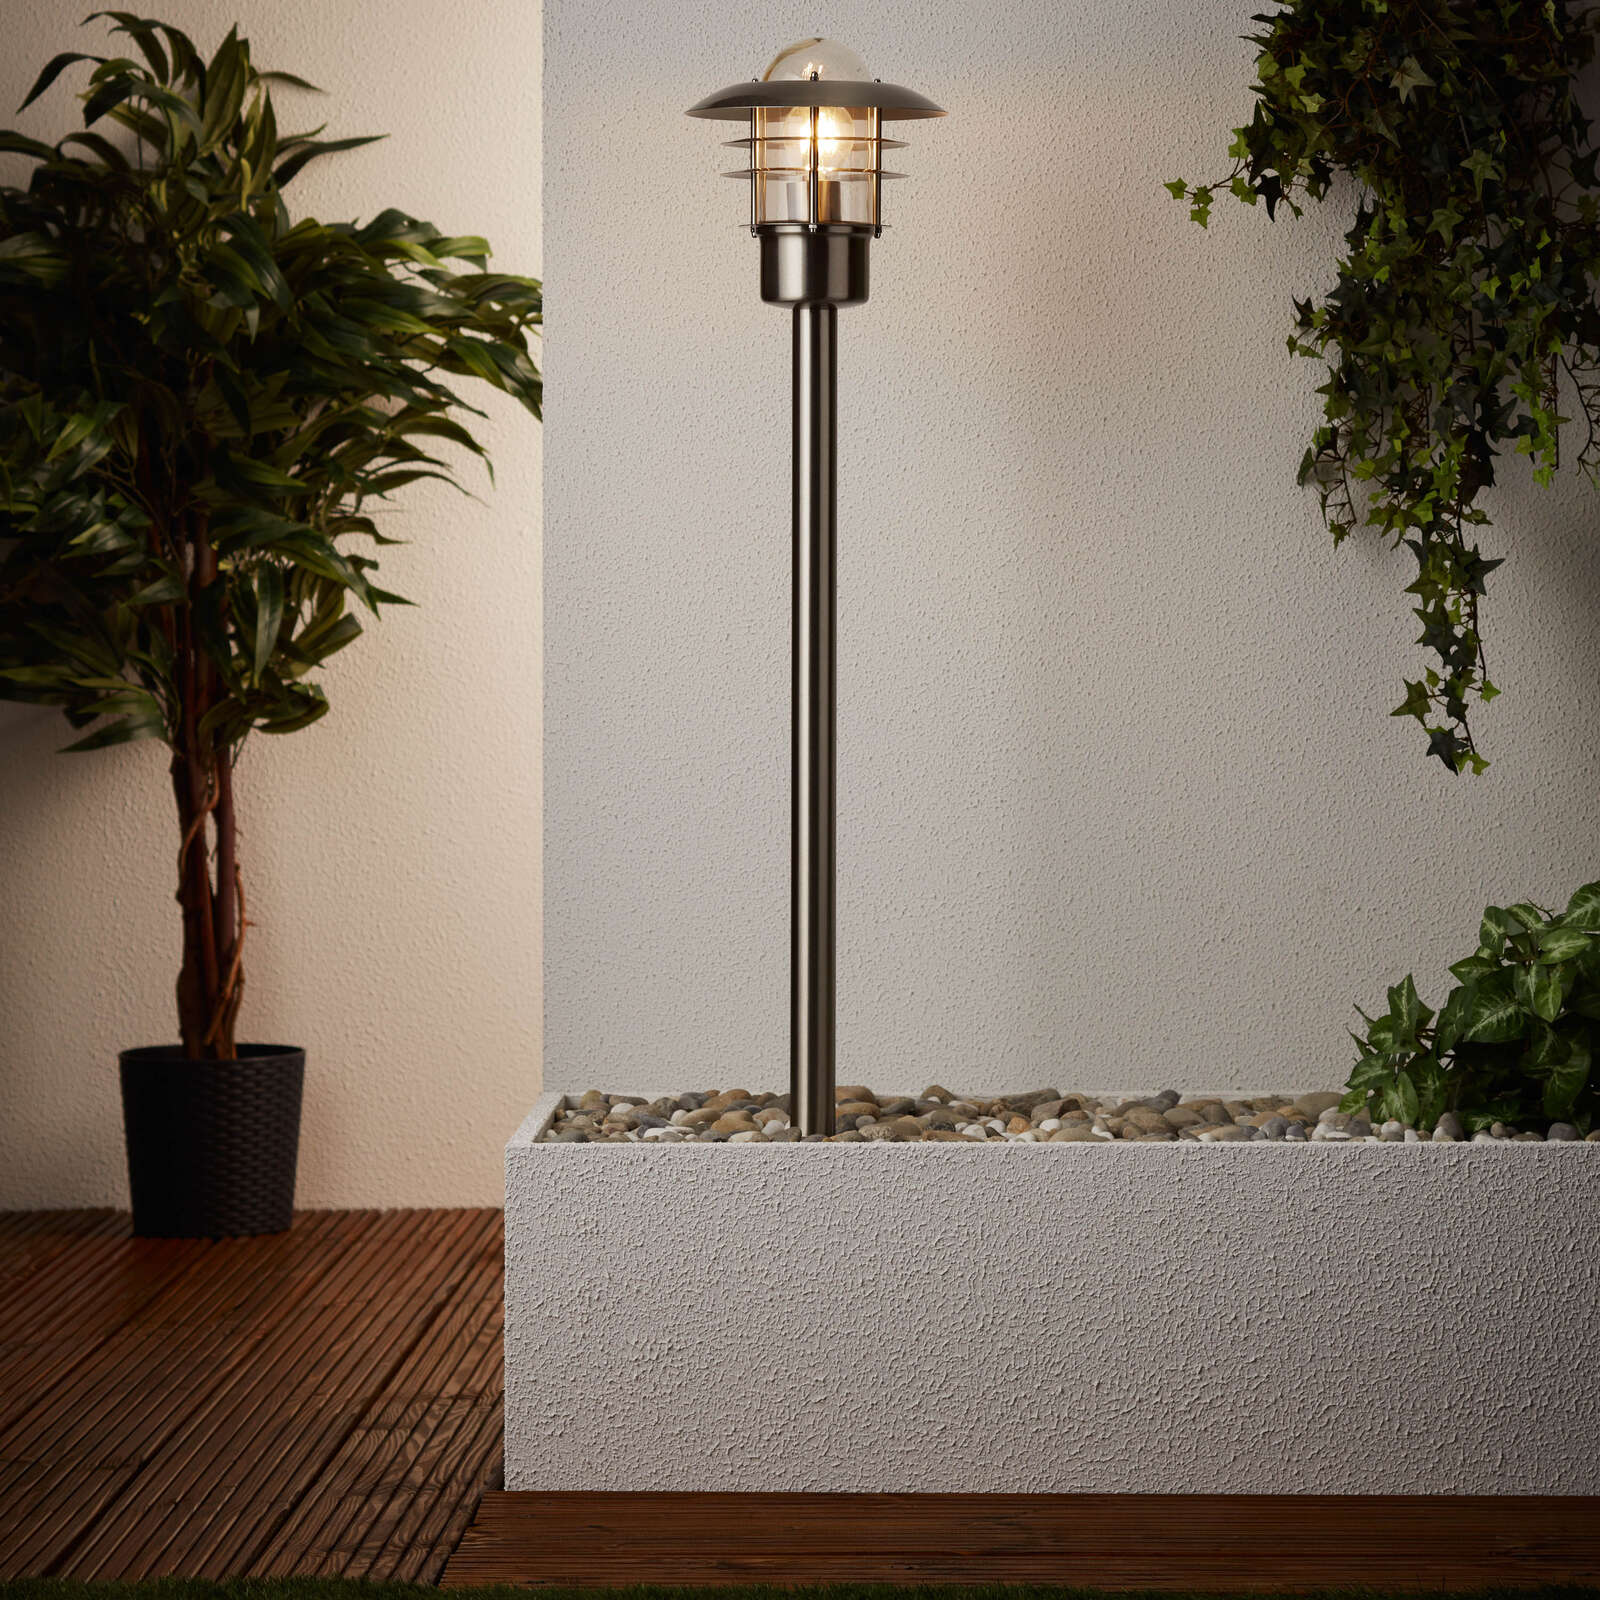             Lámpara de pie metálica para exterior - Pepe 2 - Metallic
        